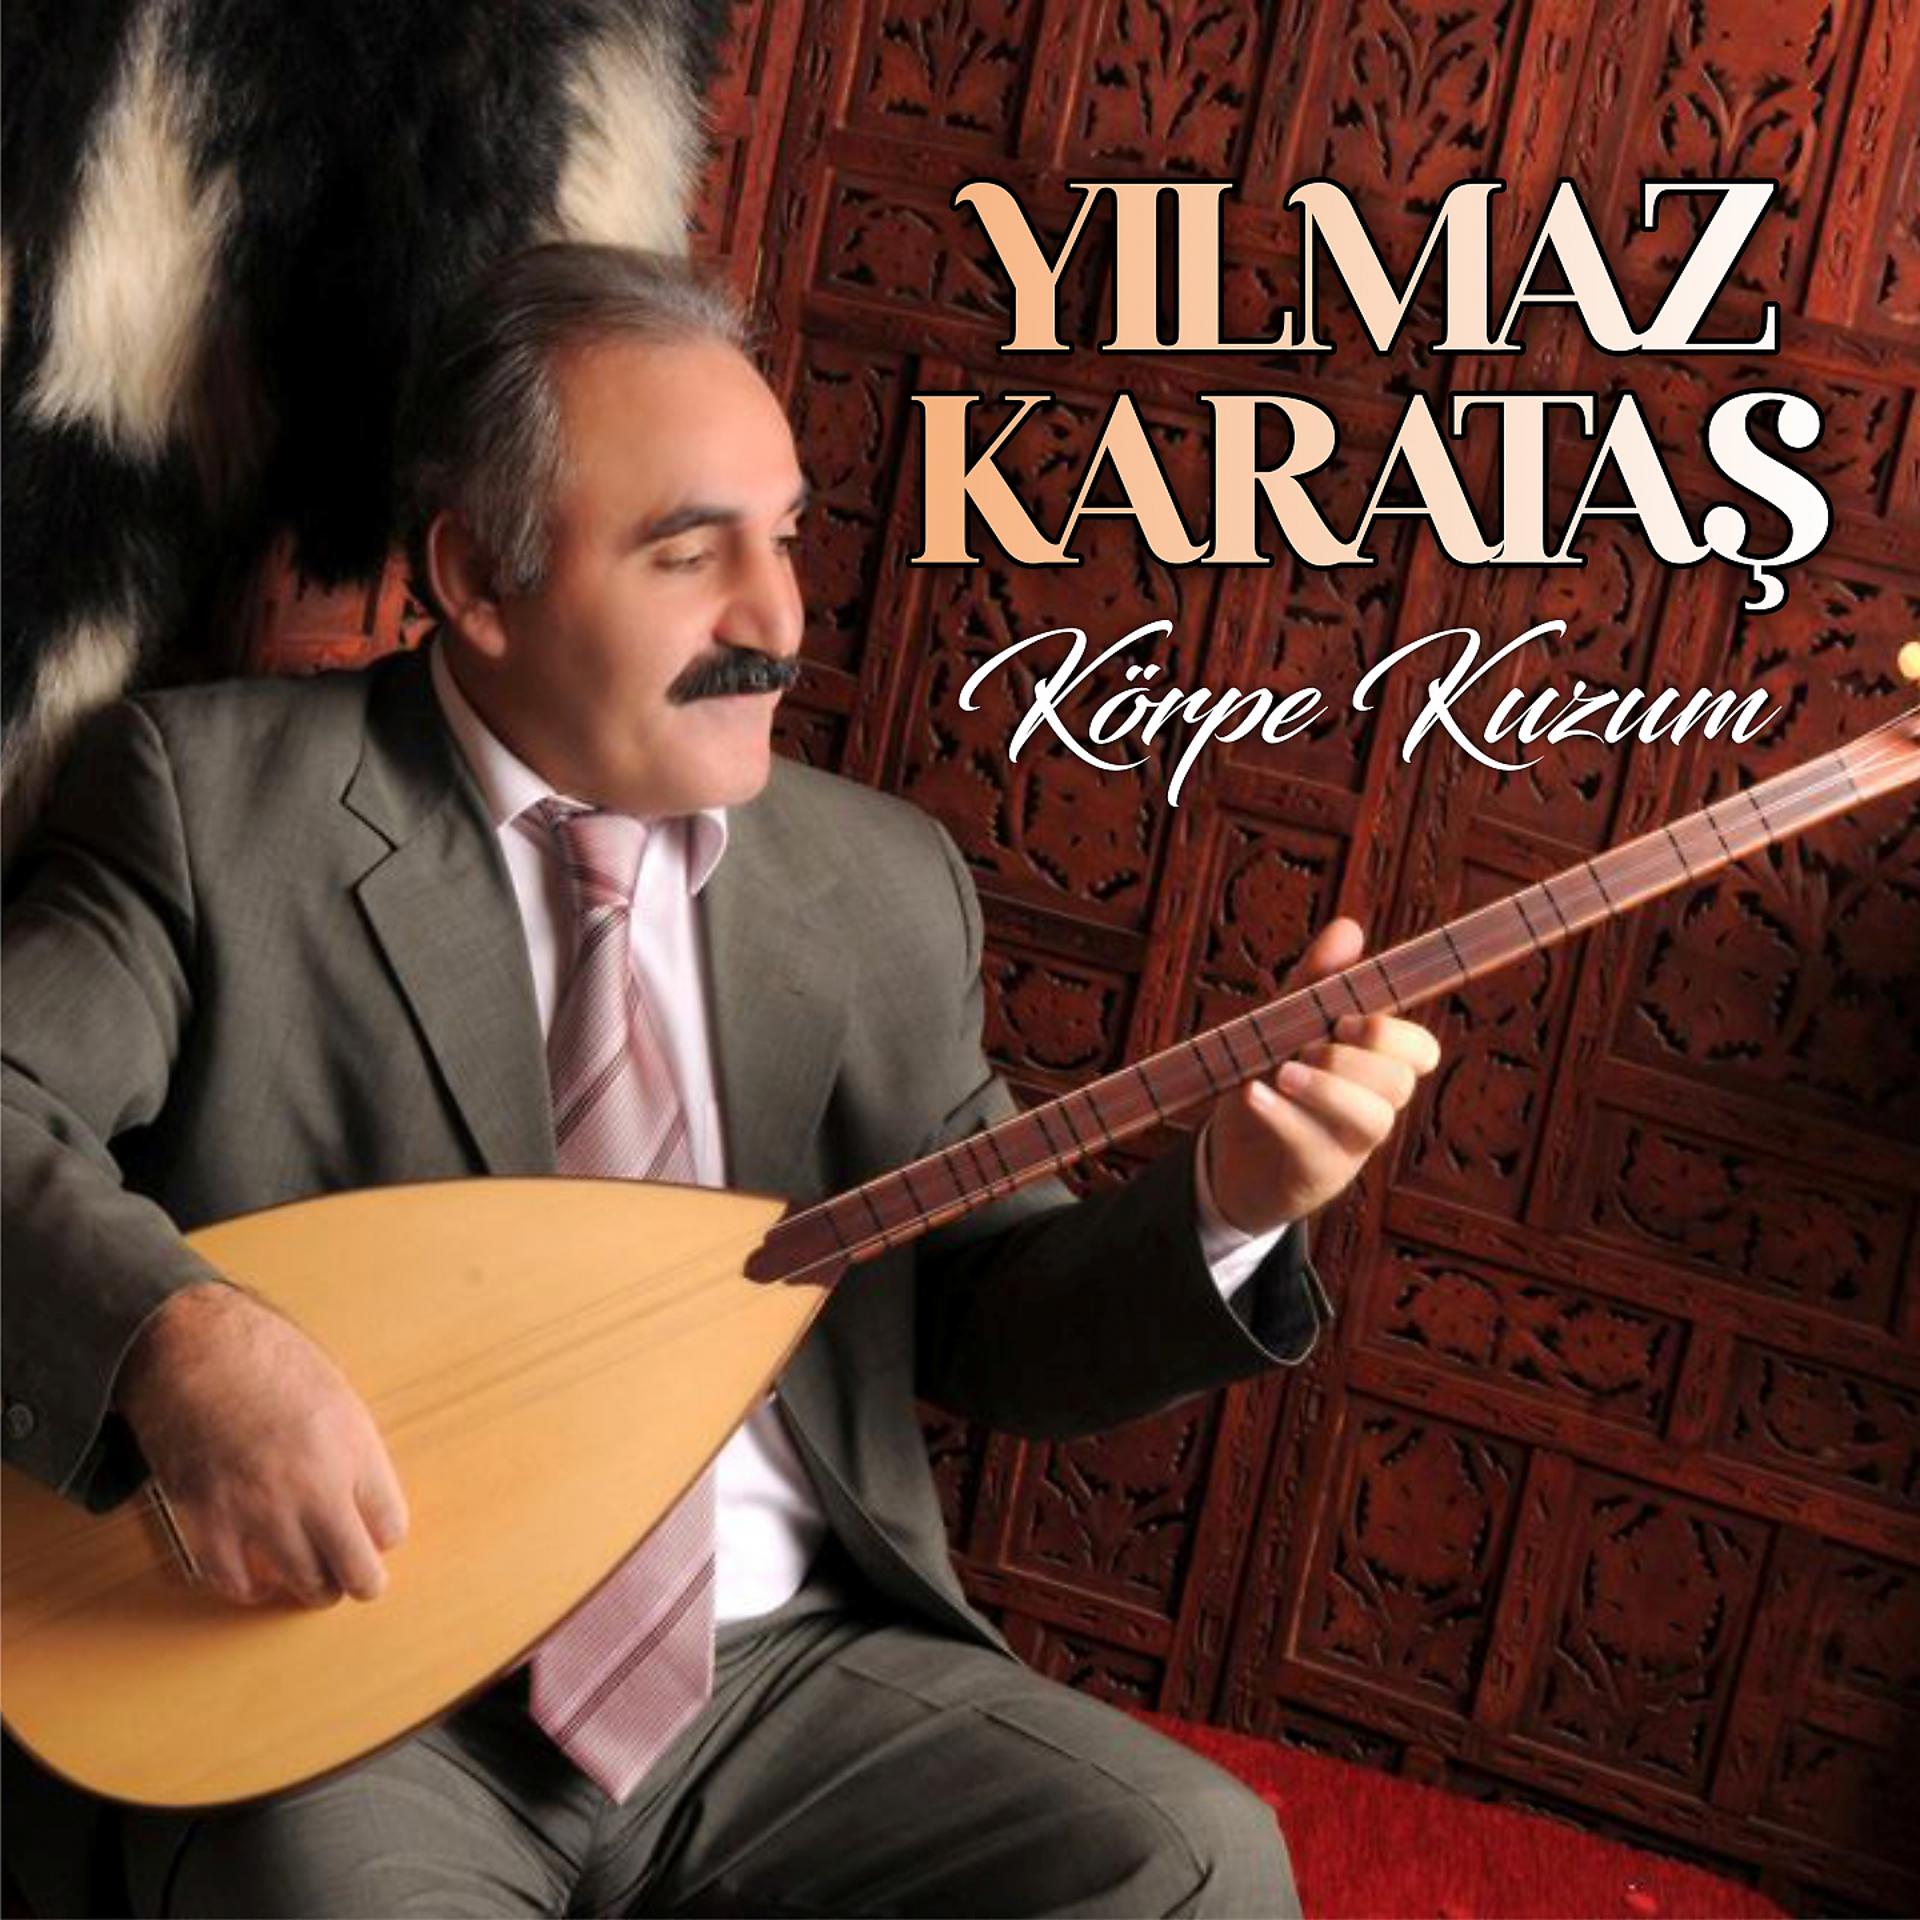 Постер альбома Körpe Kuzum